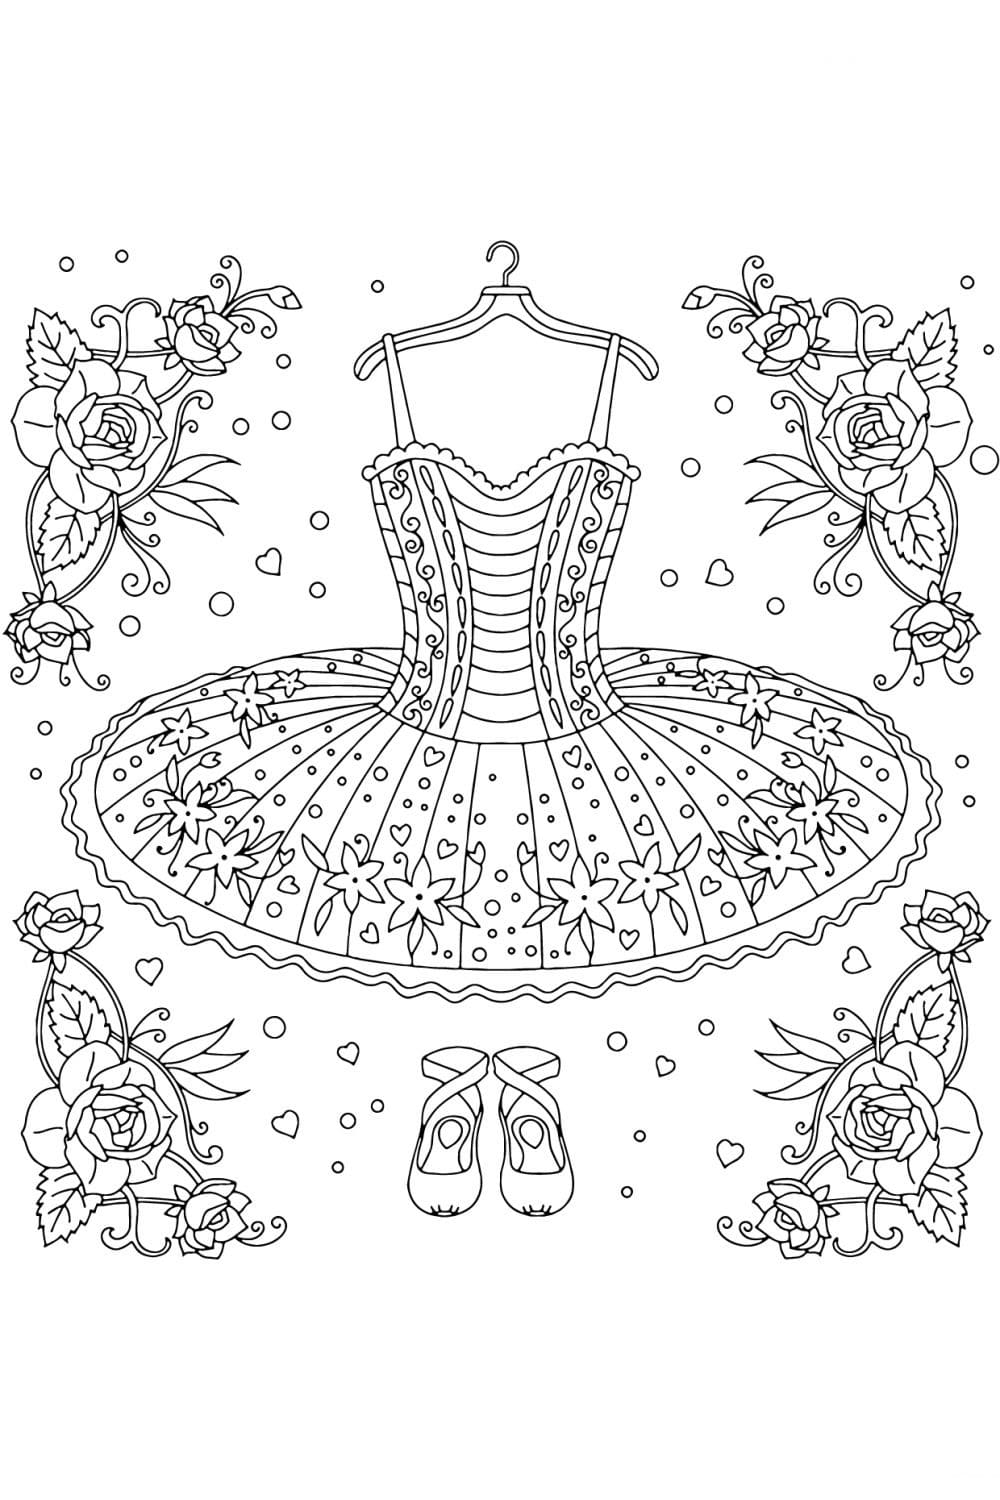 Dibujos para colorear Bailarina. Descargar o imprimir gratis